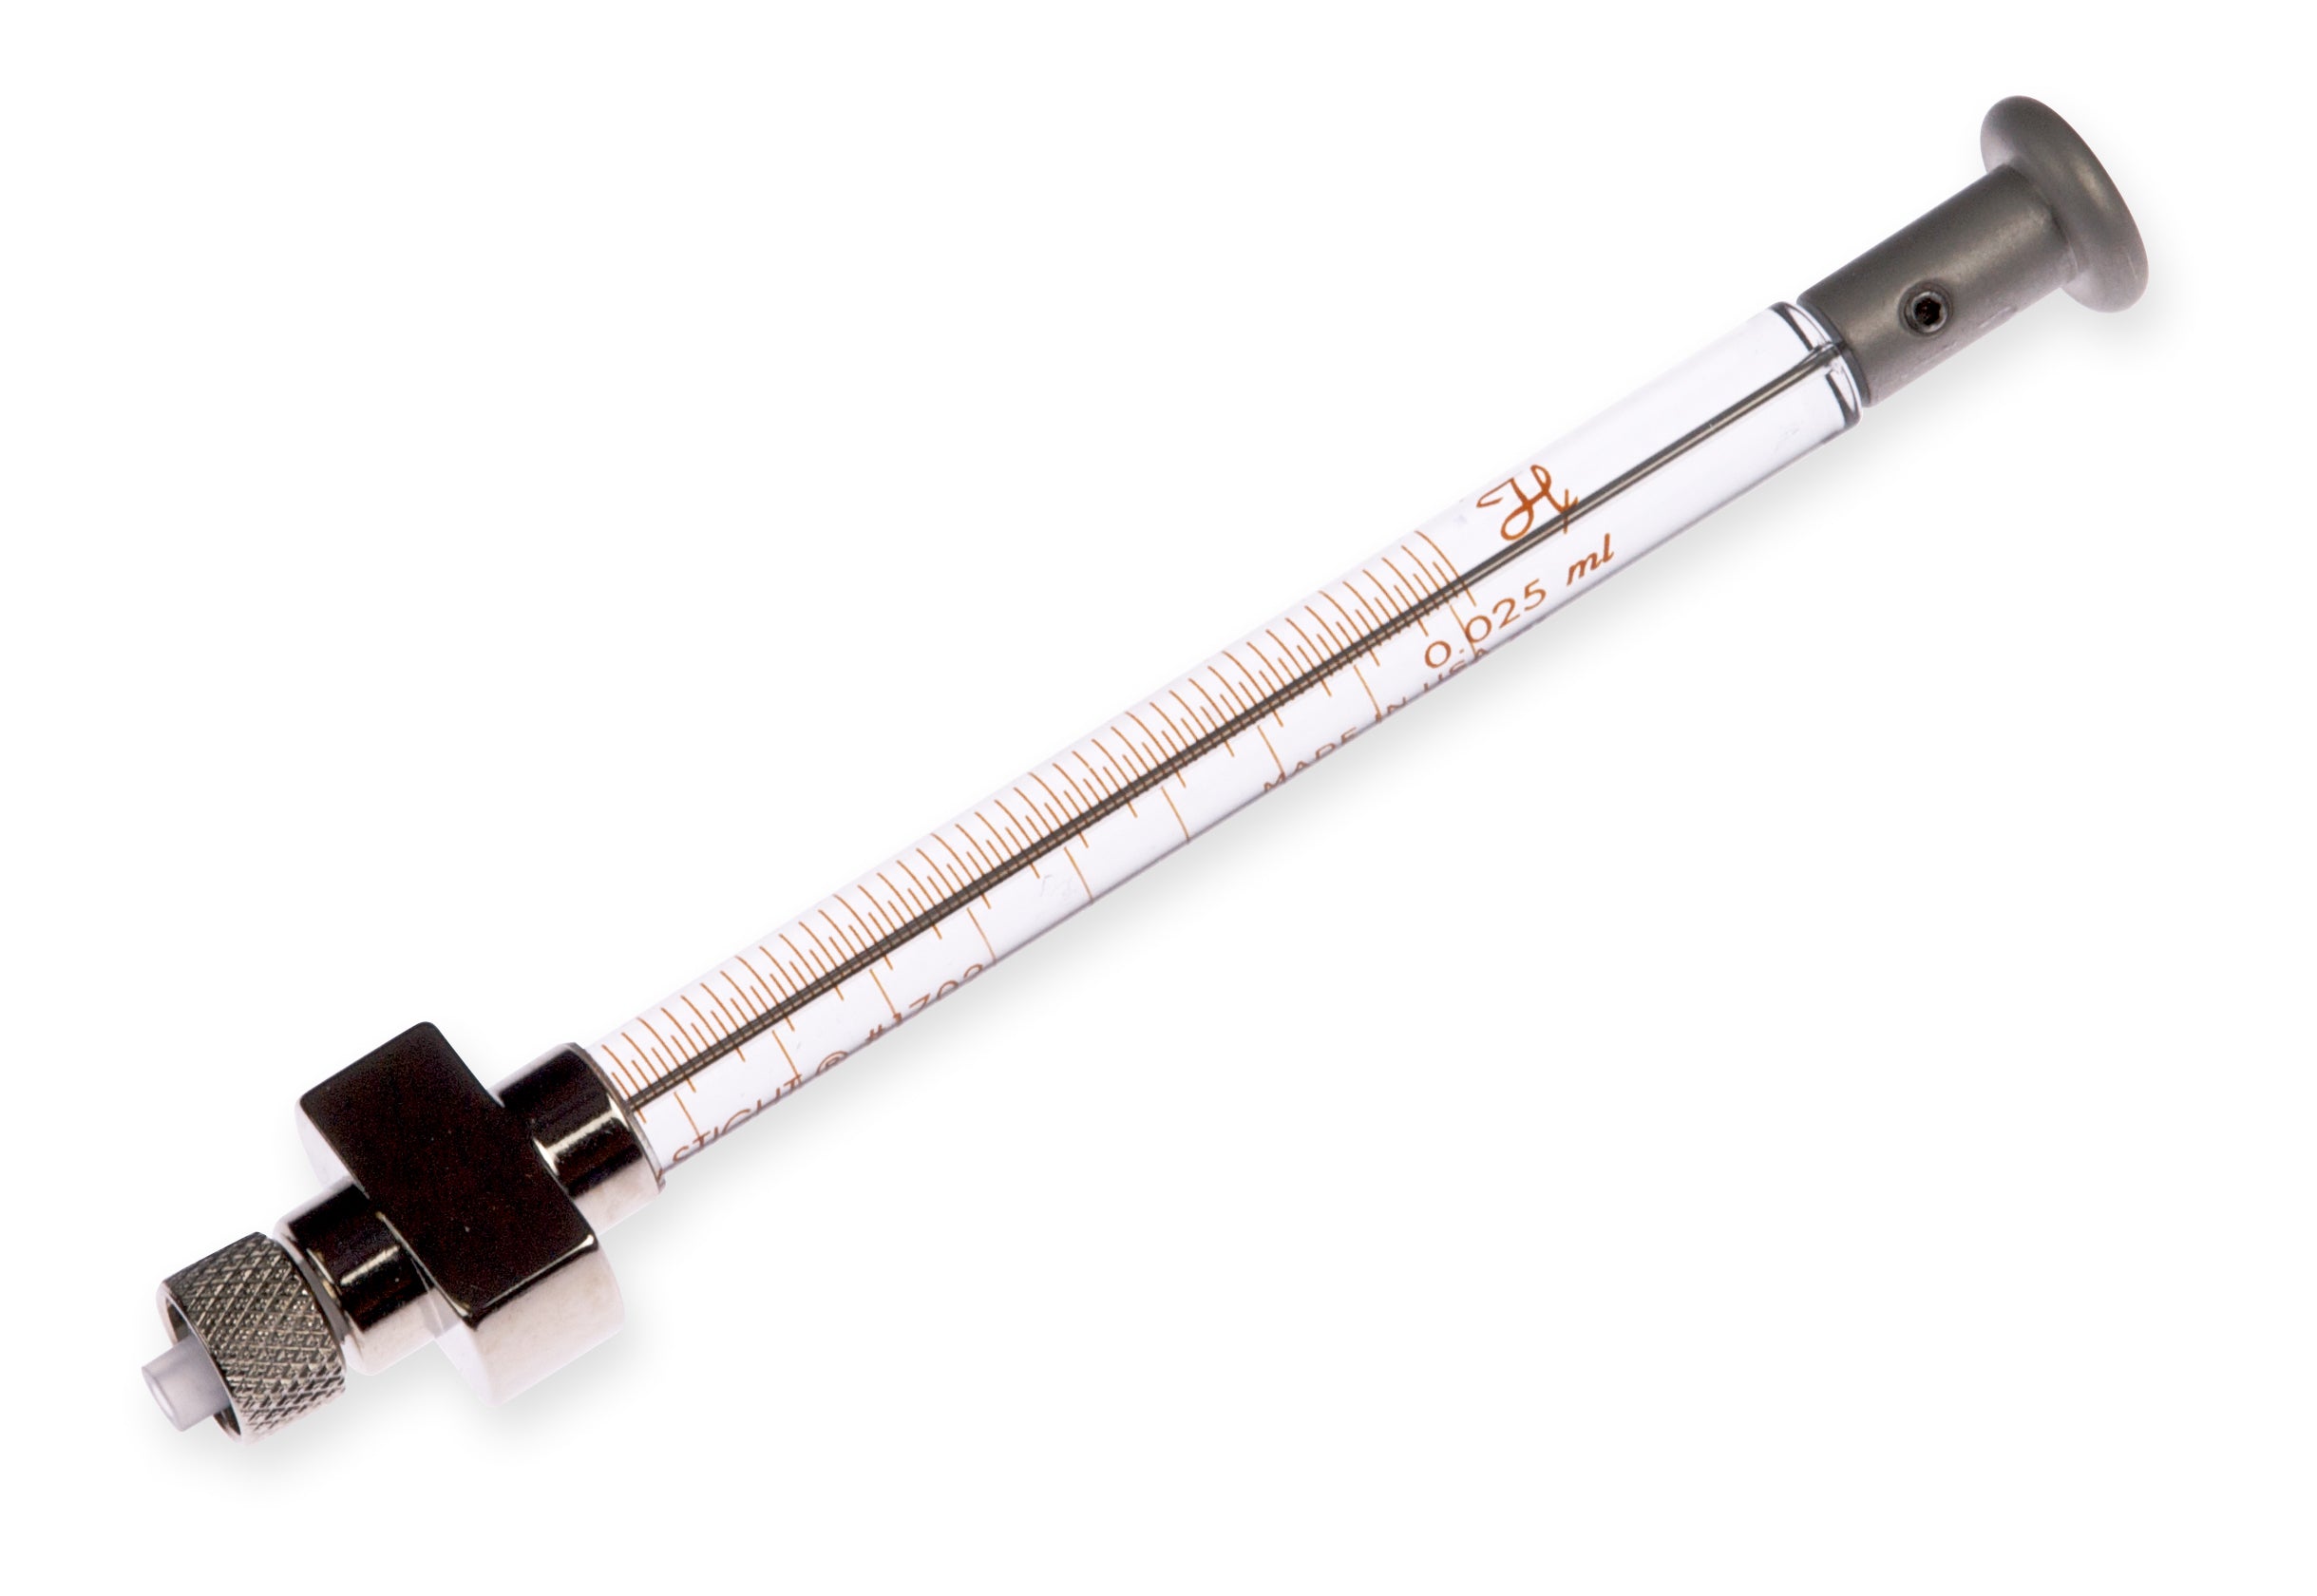 25 µL, Model 1702 DX SYR, Diluter Syringe